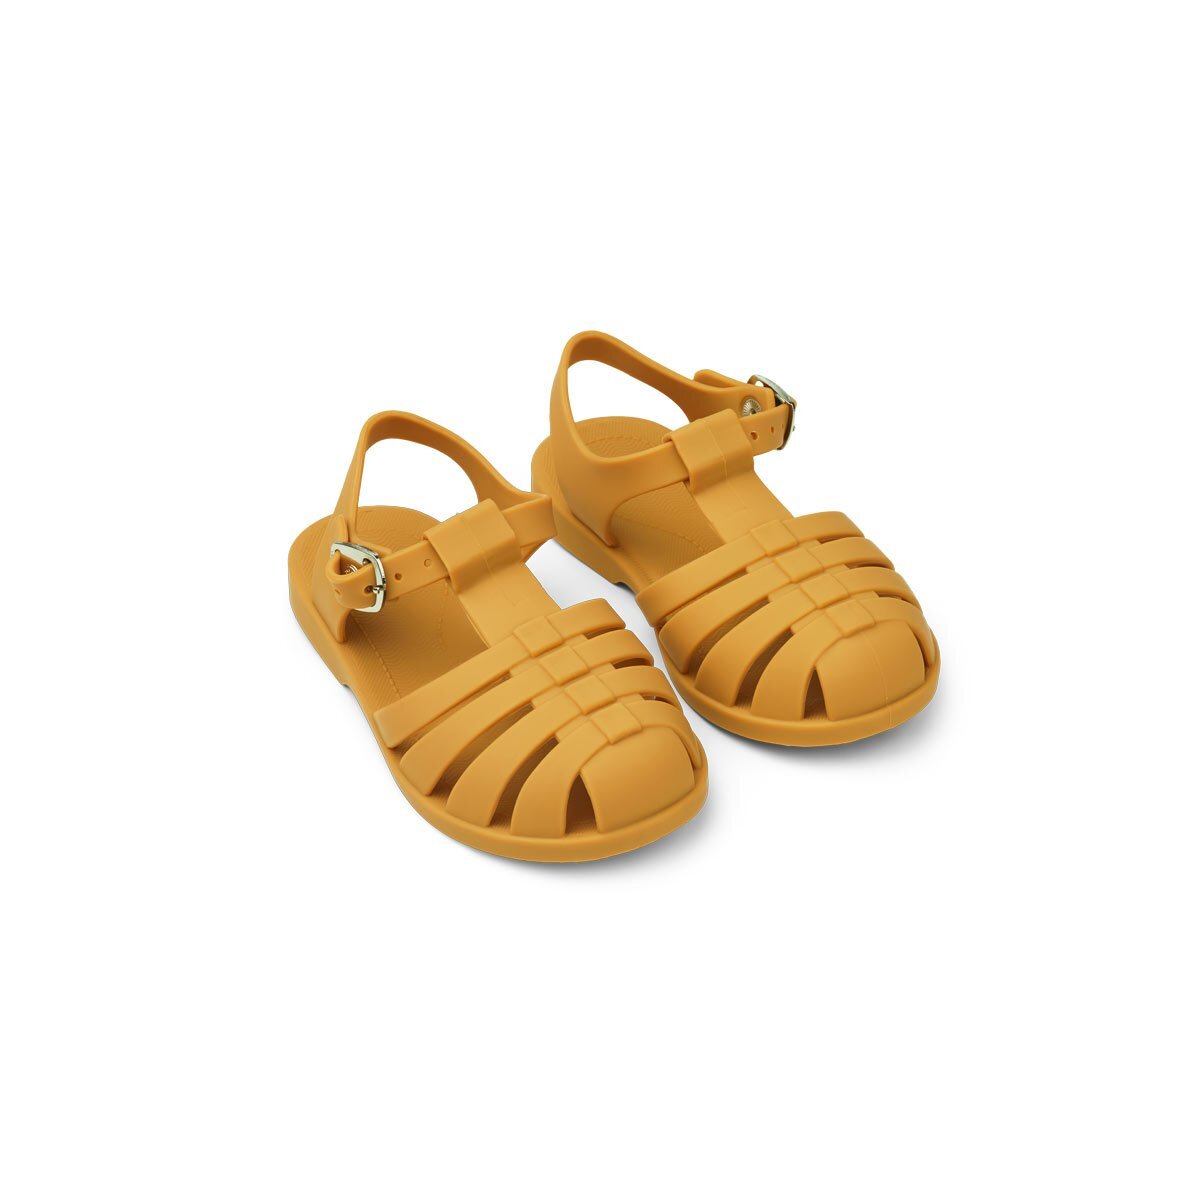 $25, Beach Sandals